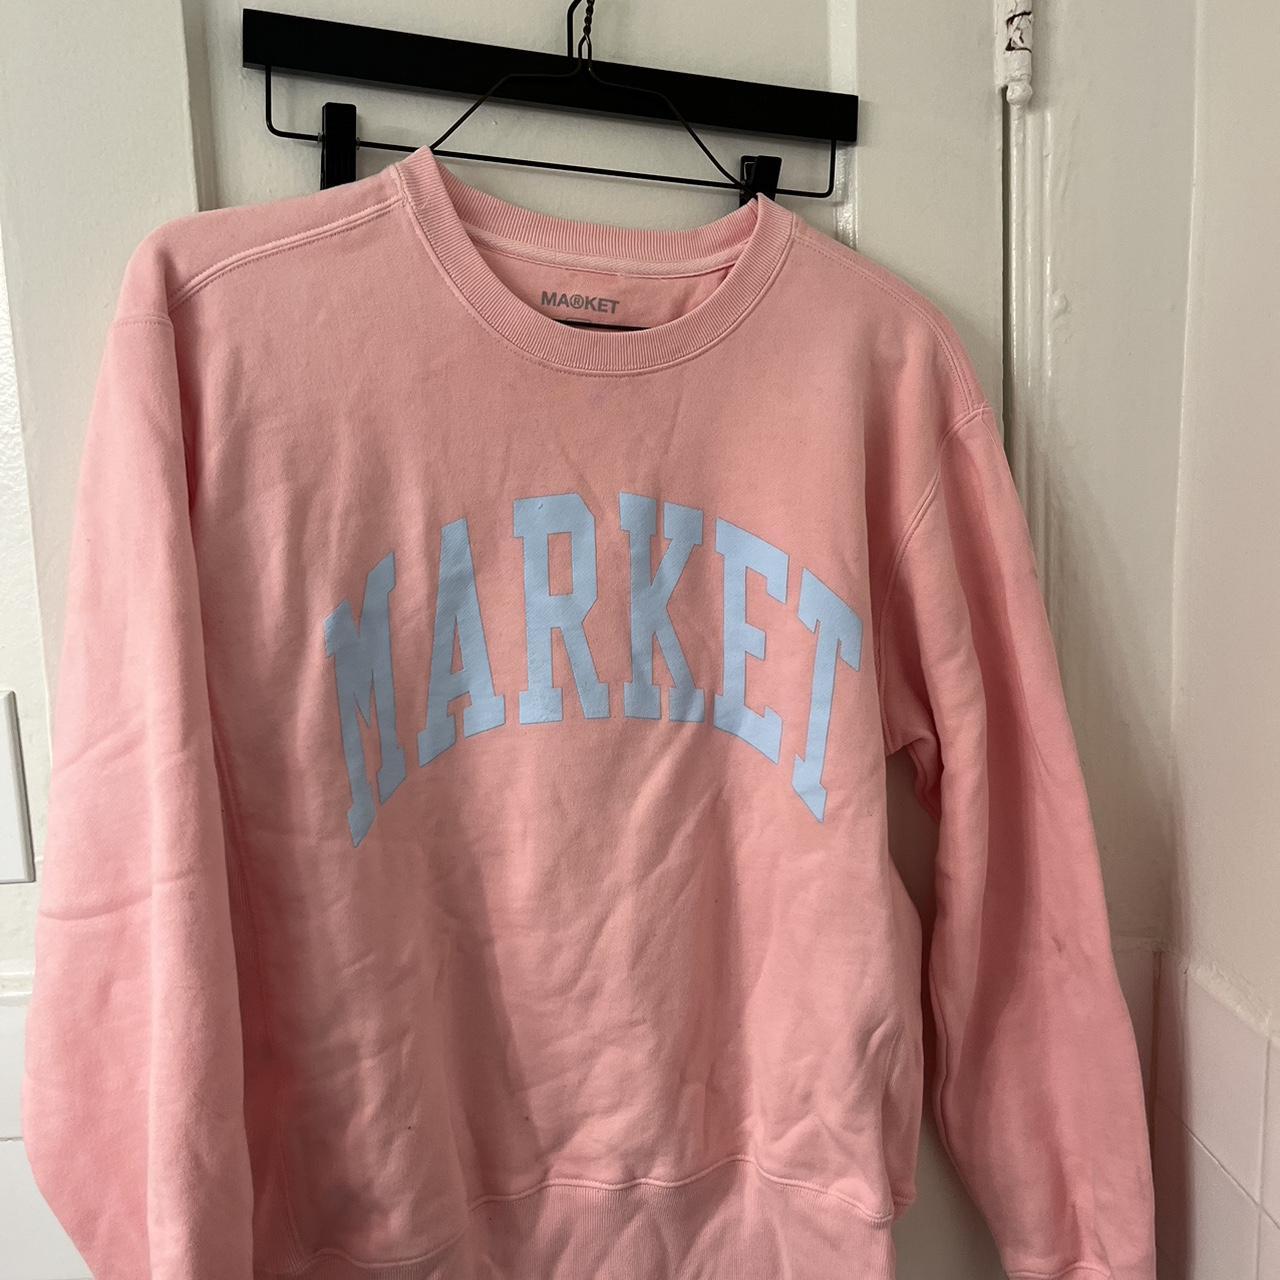 Market Women's Pink Sweatshirt